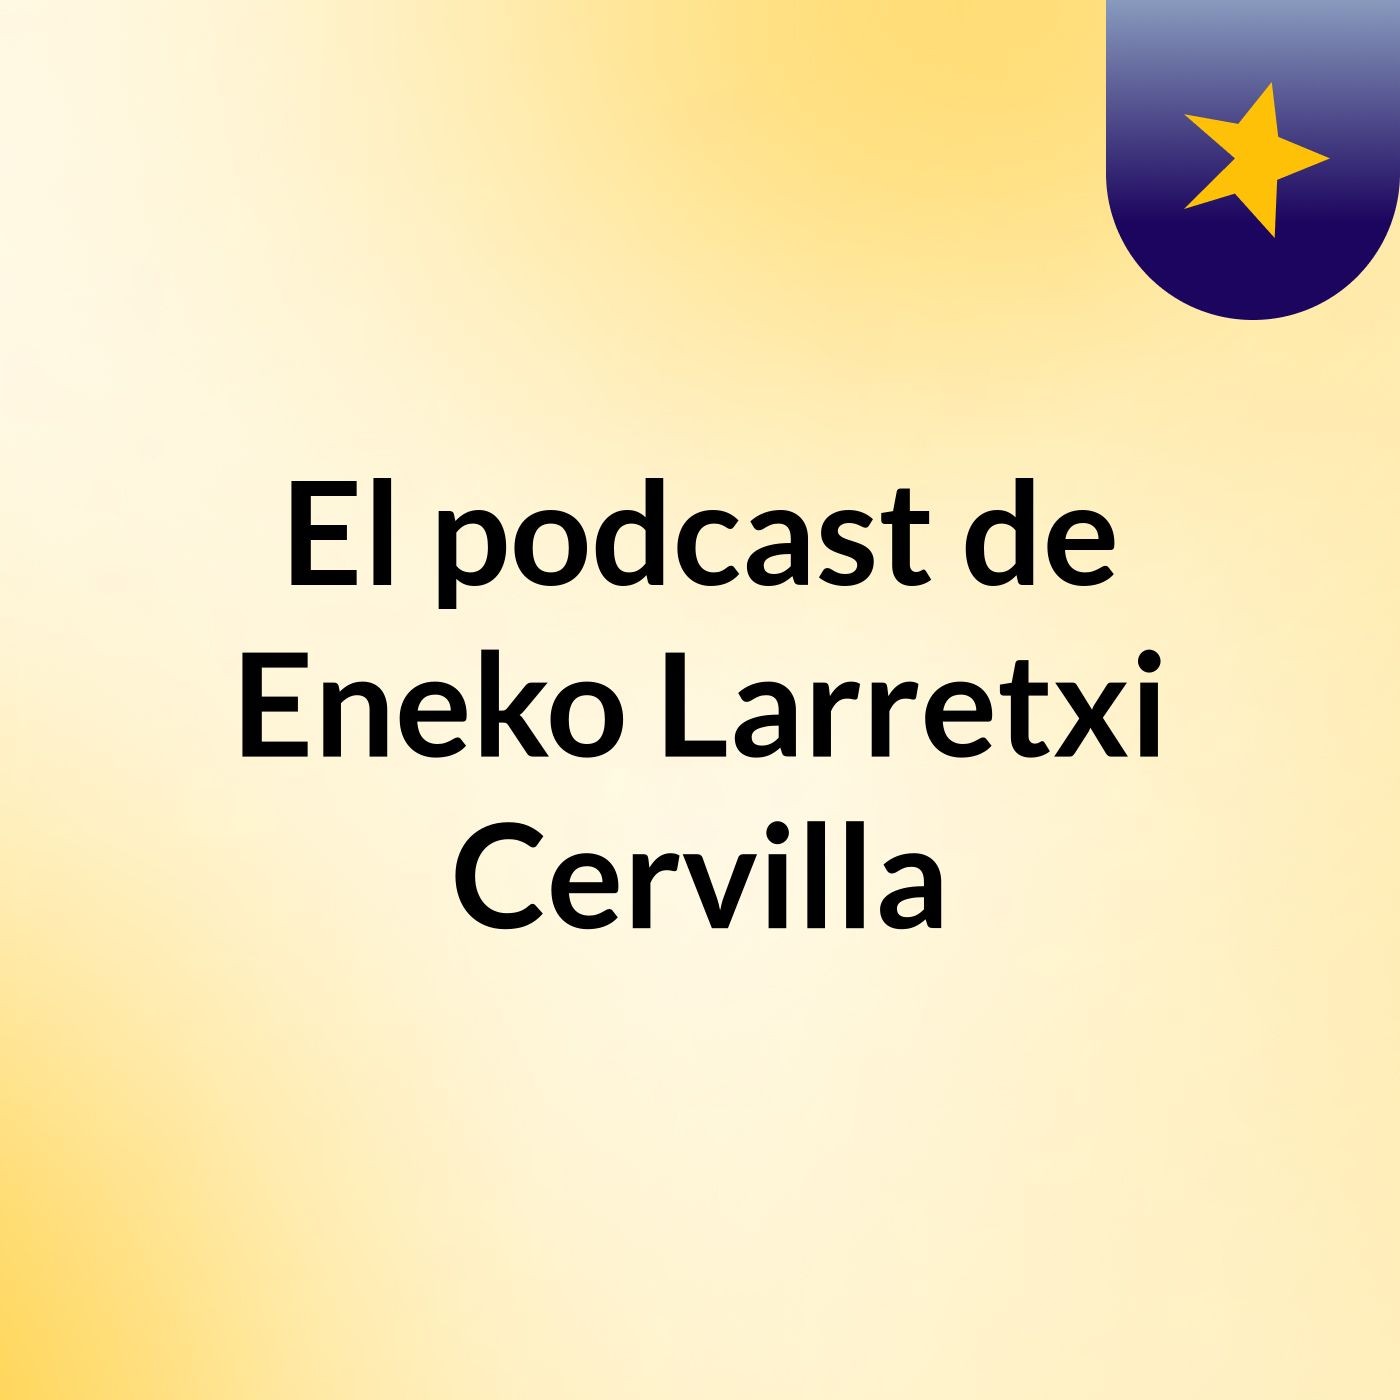 El podcast de Eneko Larretxi Cervilla